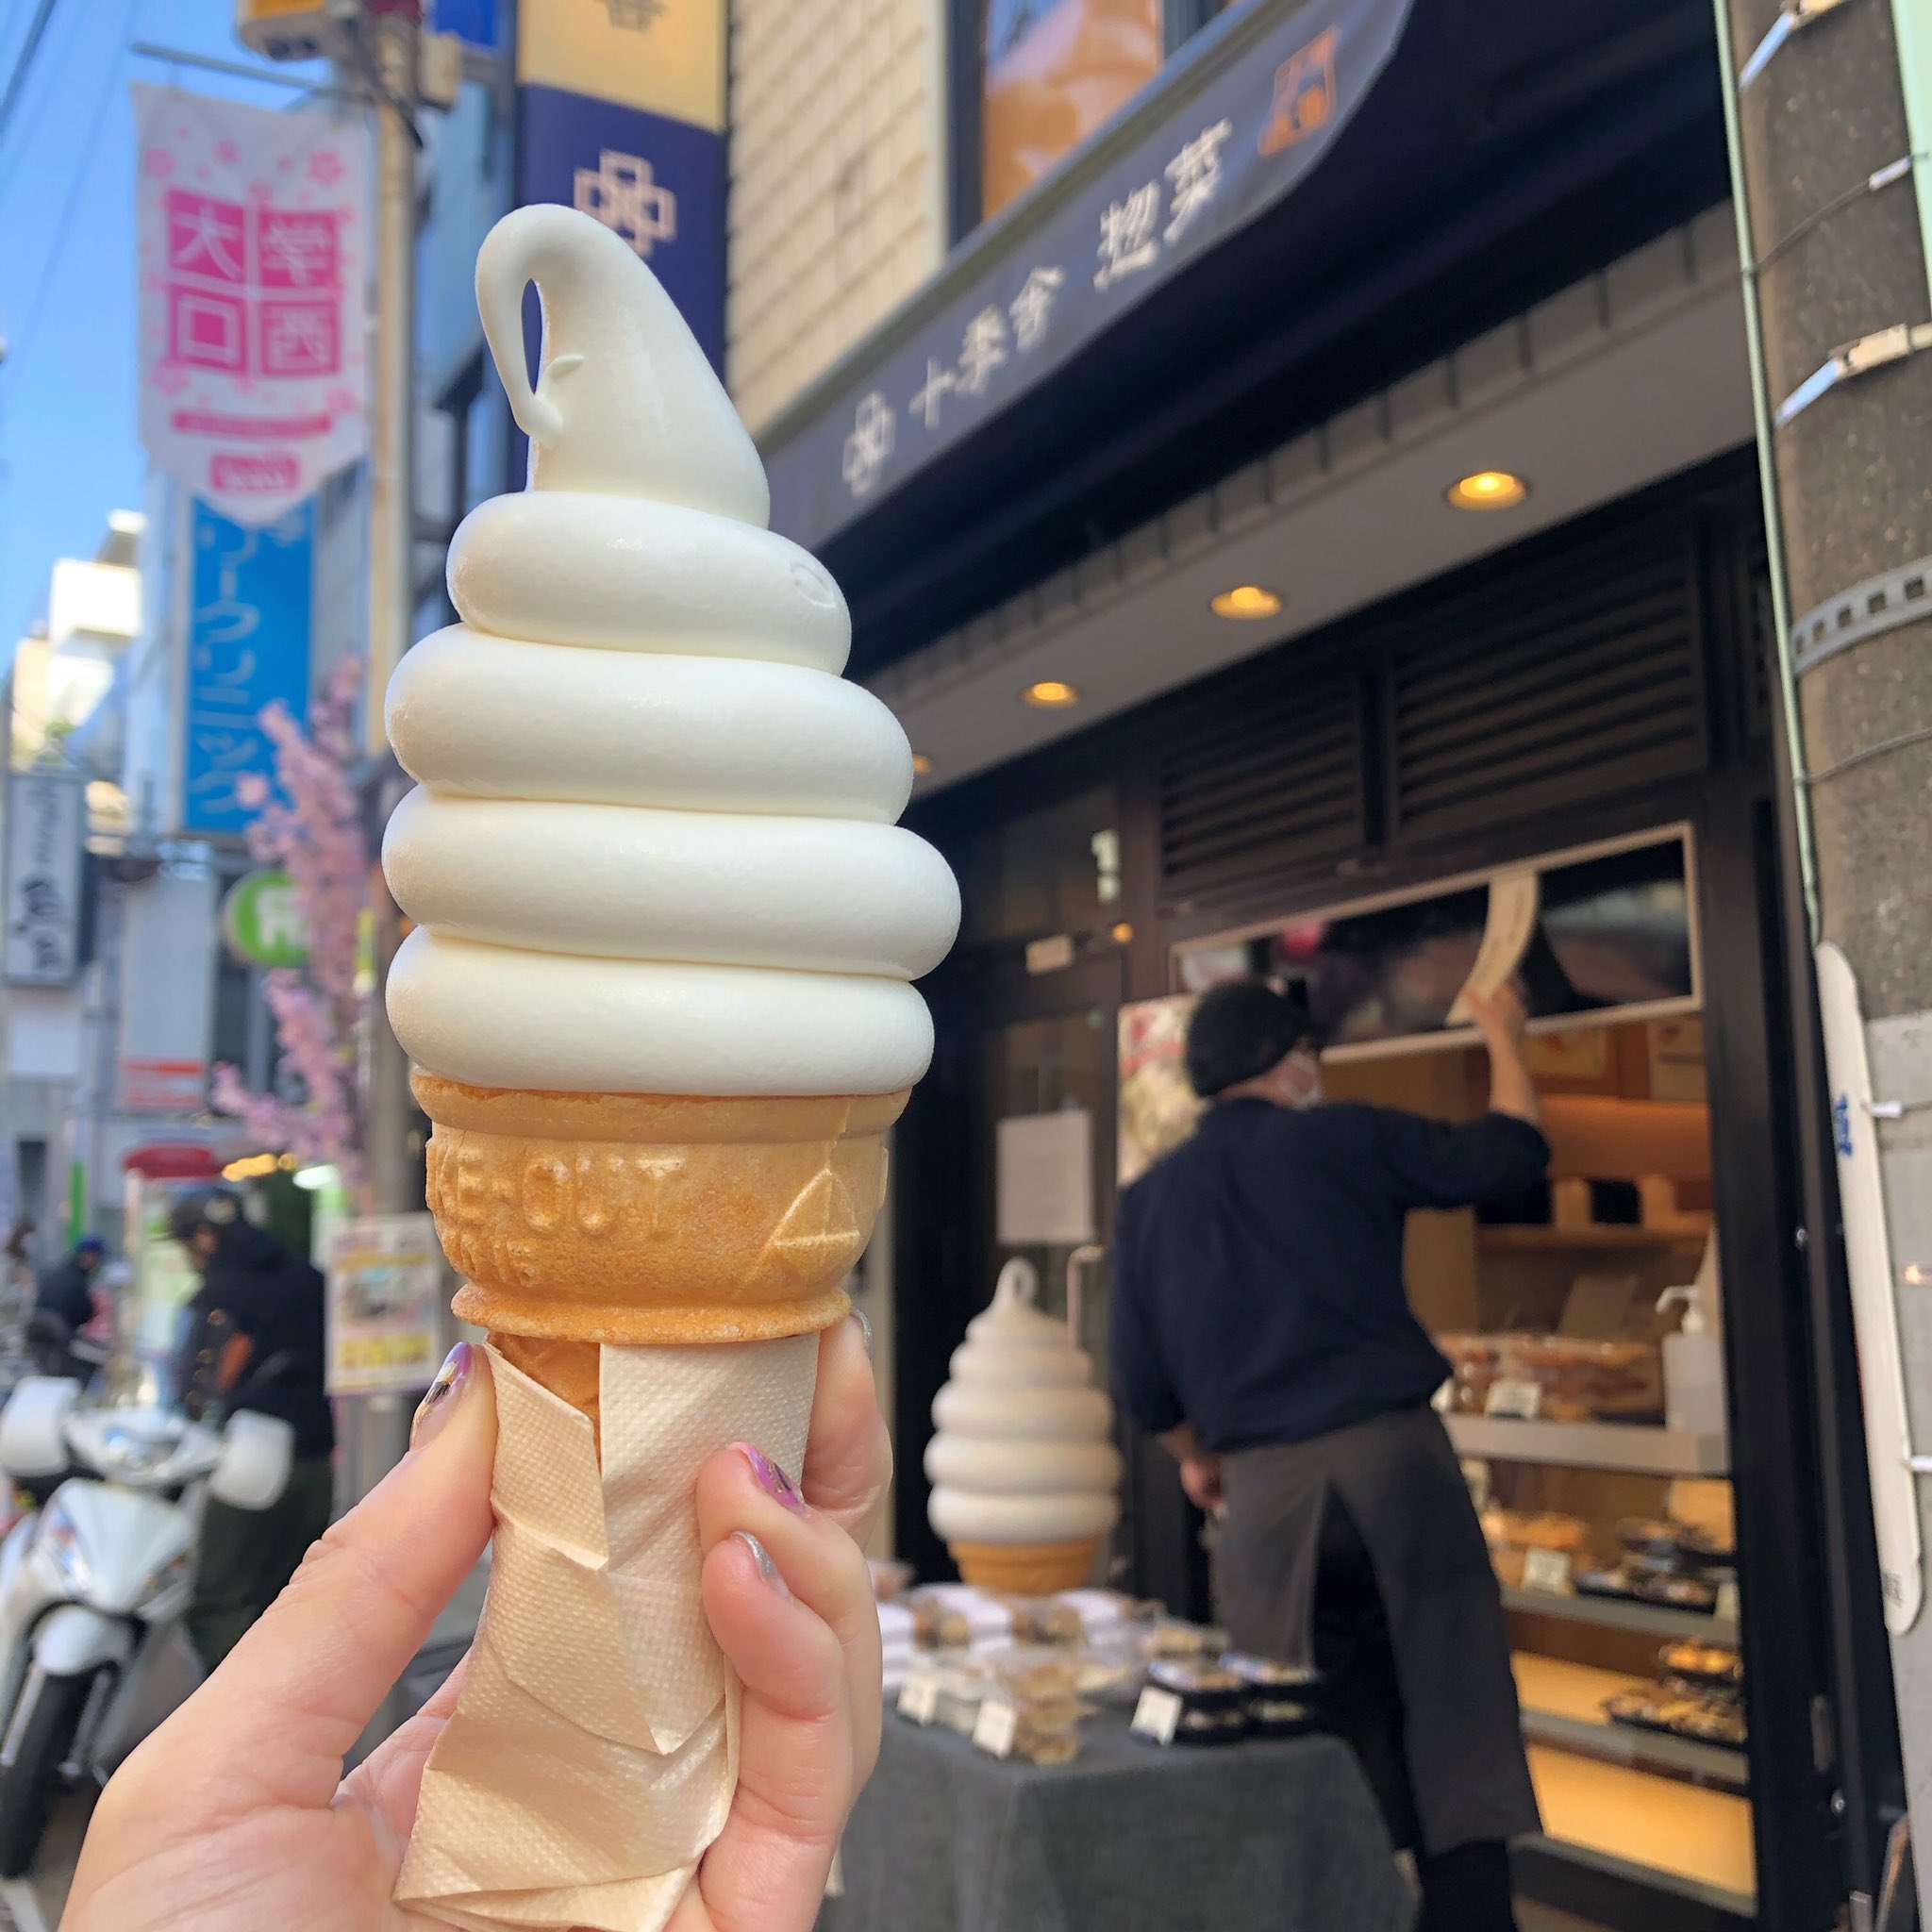 Sanabanana 十季舎さんのソフトクリーム 更に美味しくのポスターにひかれて食べたら なんかすごいことになってたw これミルクソフトクリームじゃなくて 生クリームソフトクリームだわ こってりの最上級 こってりすと T Co Zk7fjvlppa Twitter